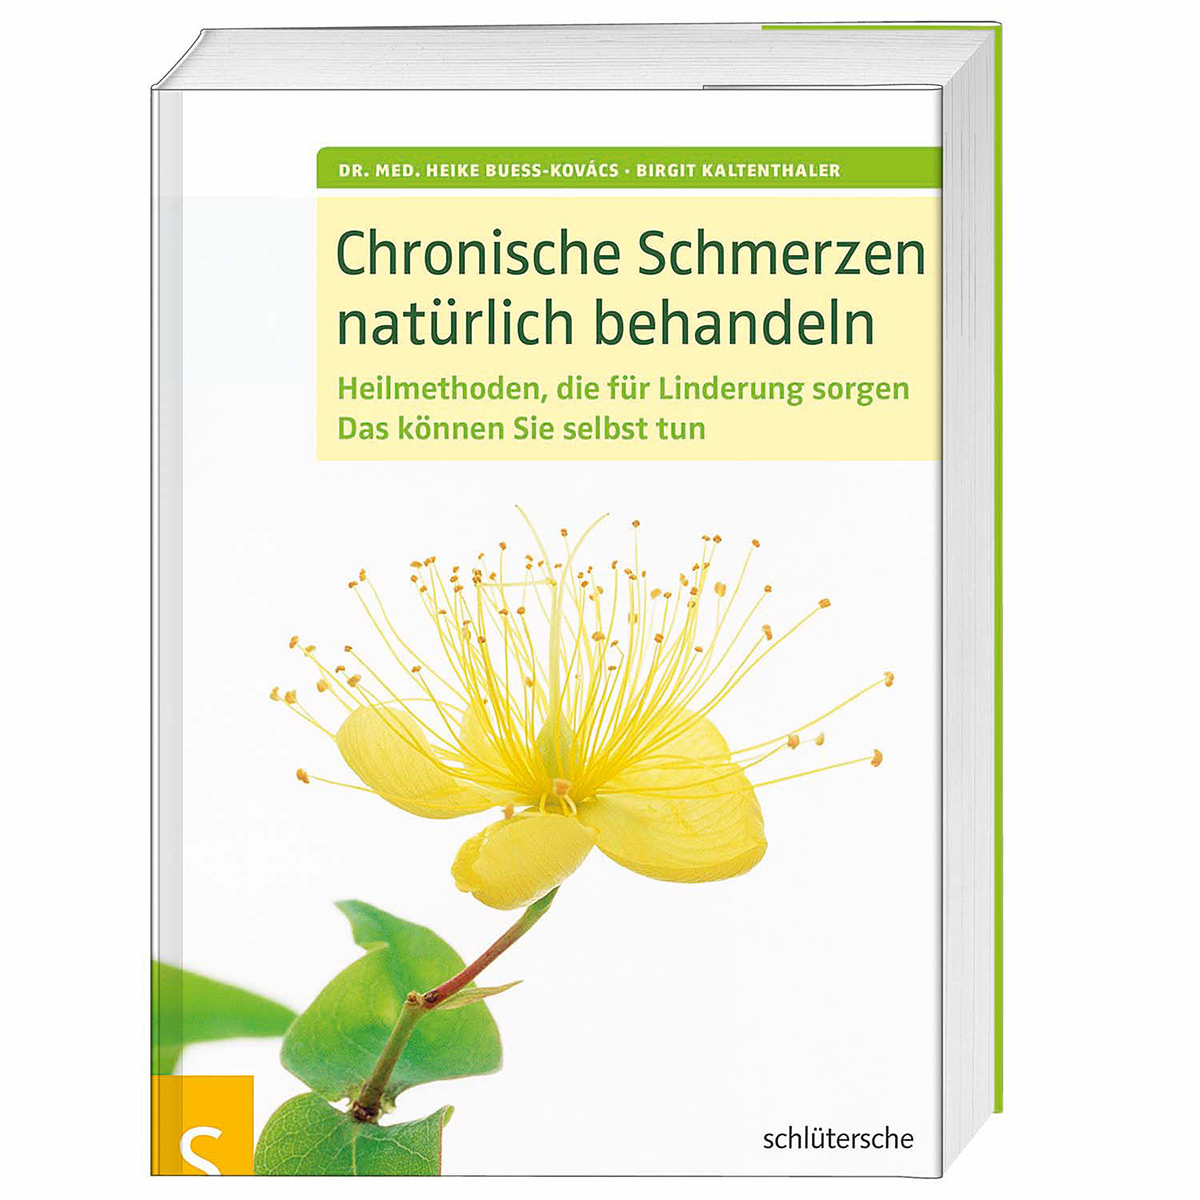 Chronische Schmerzen natürlich behandeln von Schluetersche Verlagsgesellschaft mbH & Co. KG